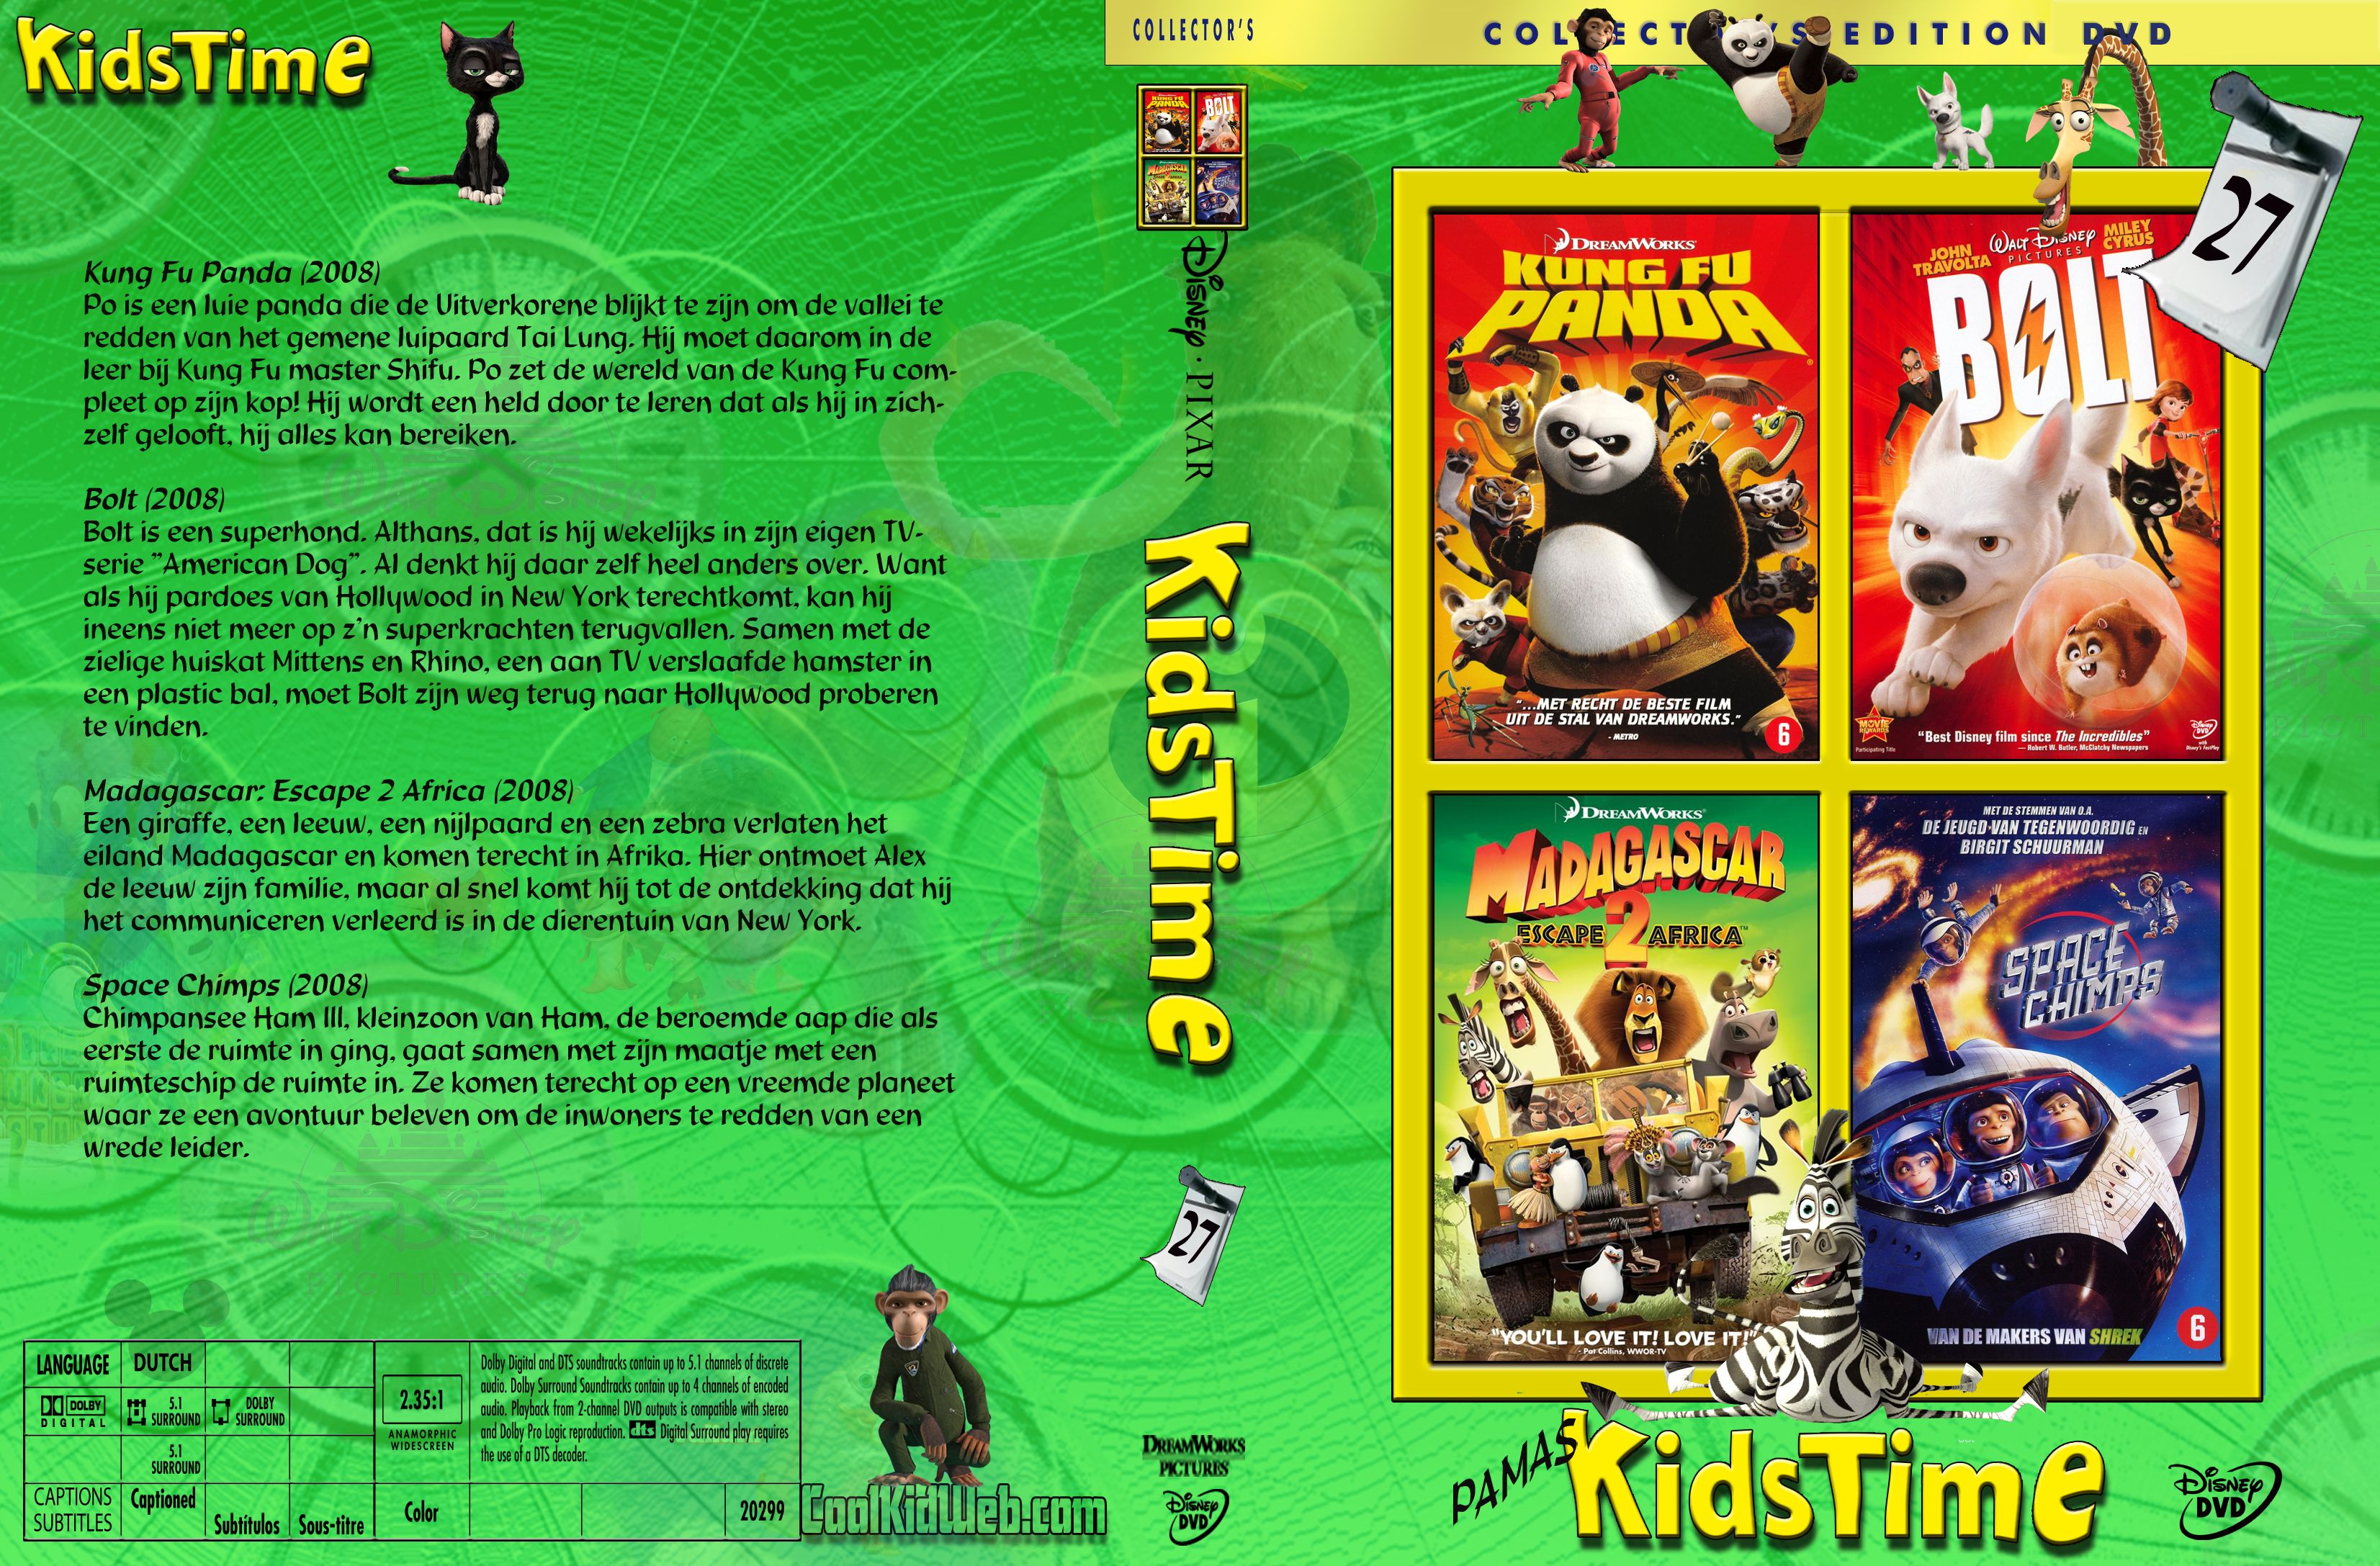 Pamas Kidstime Vol. 27 DVD NL